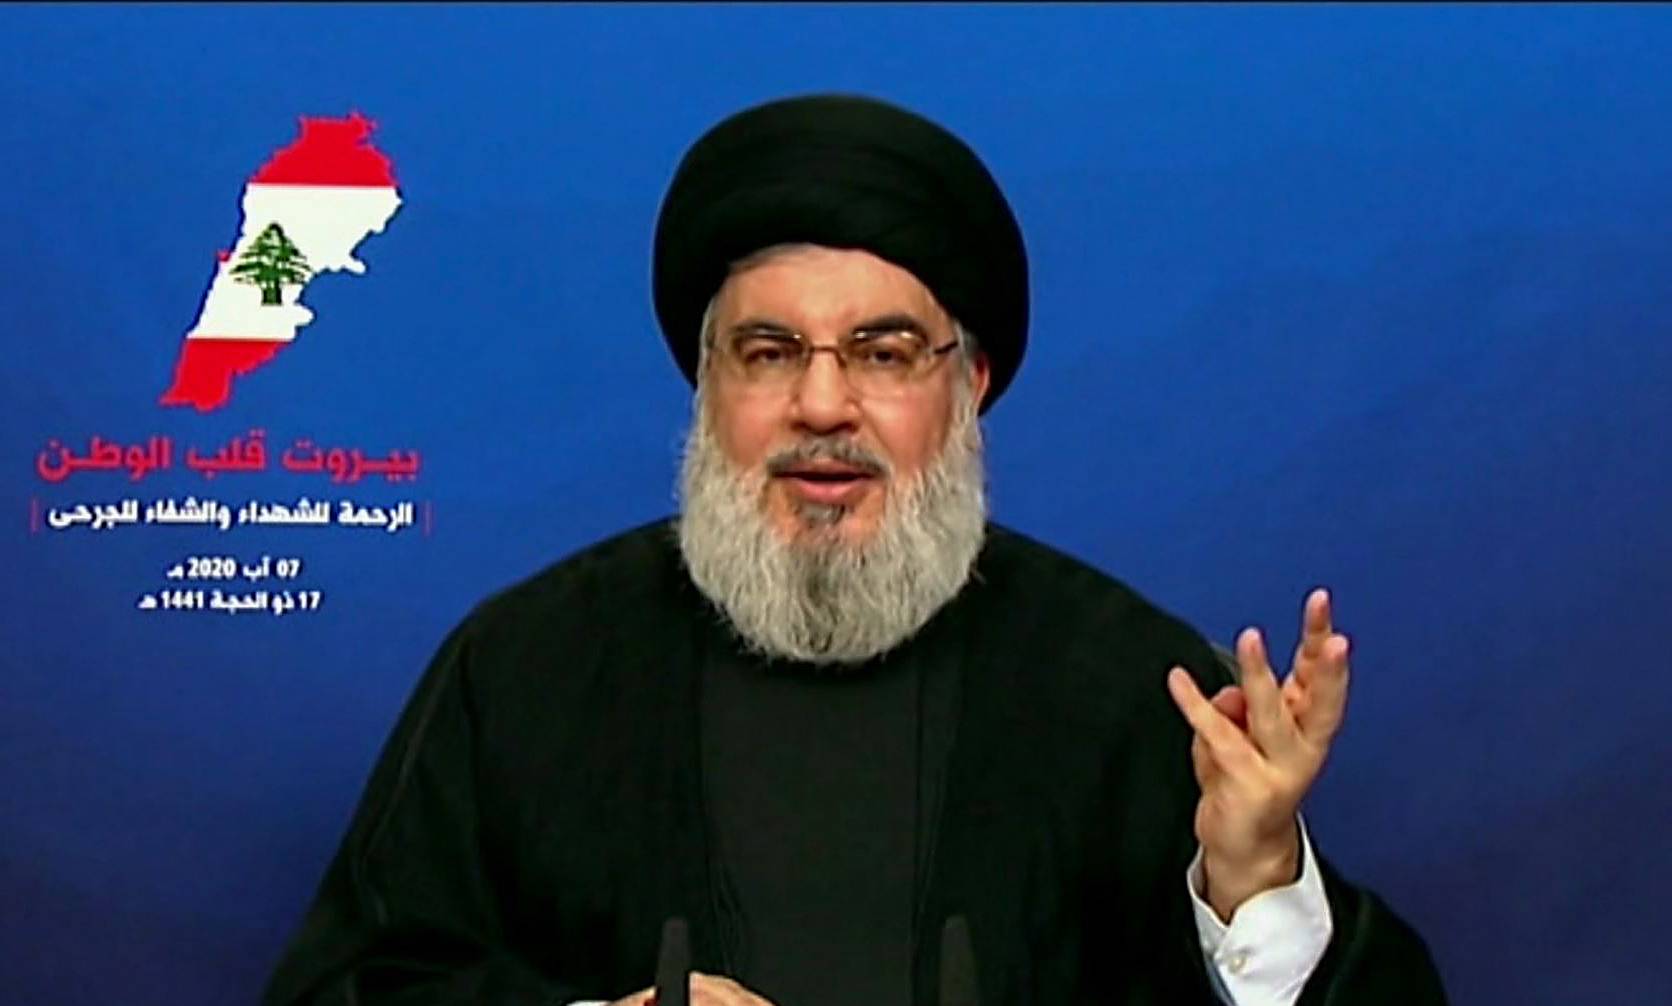 Hezbollah nega envolvimento em explosão em Beirute